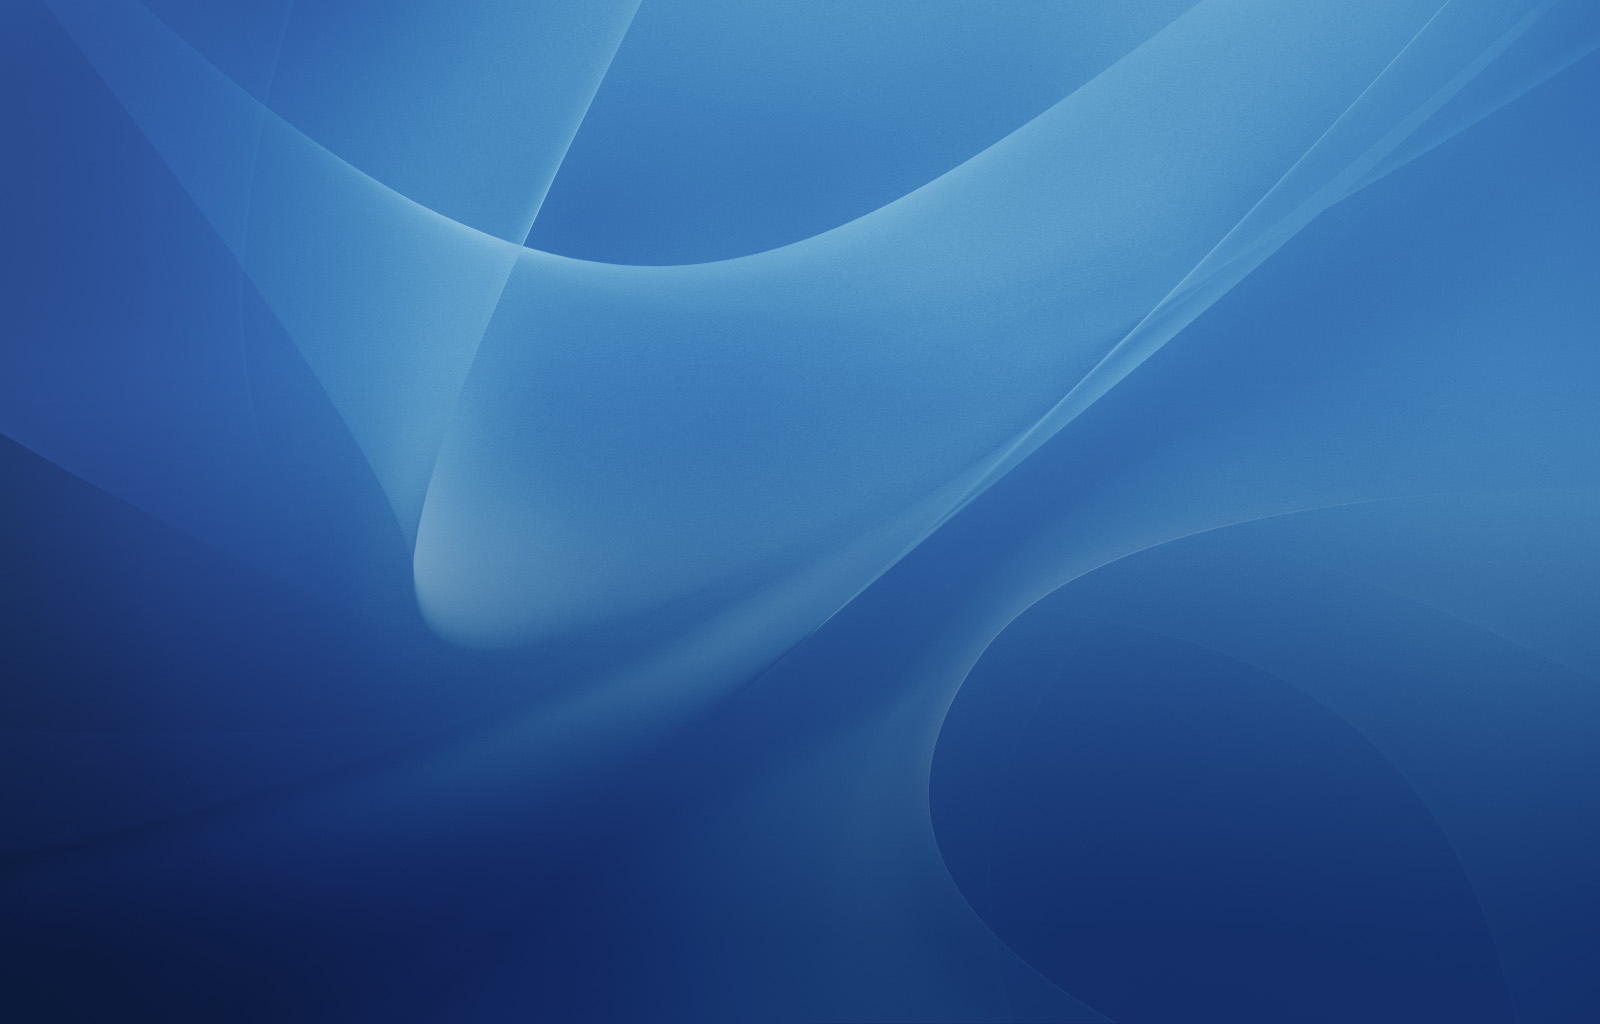 Desktop Wallpaper Blue Widescreen Uploaded By Image